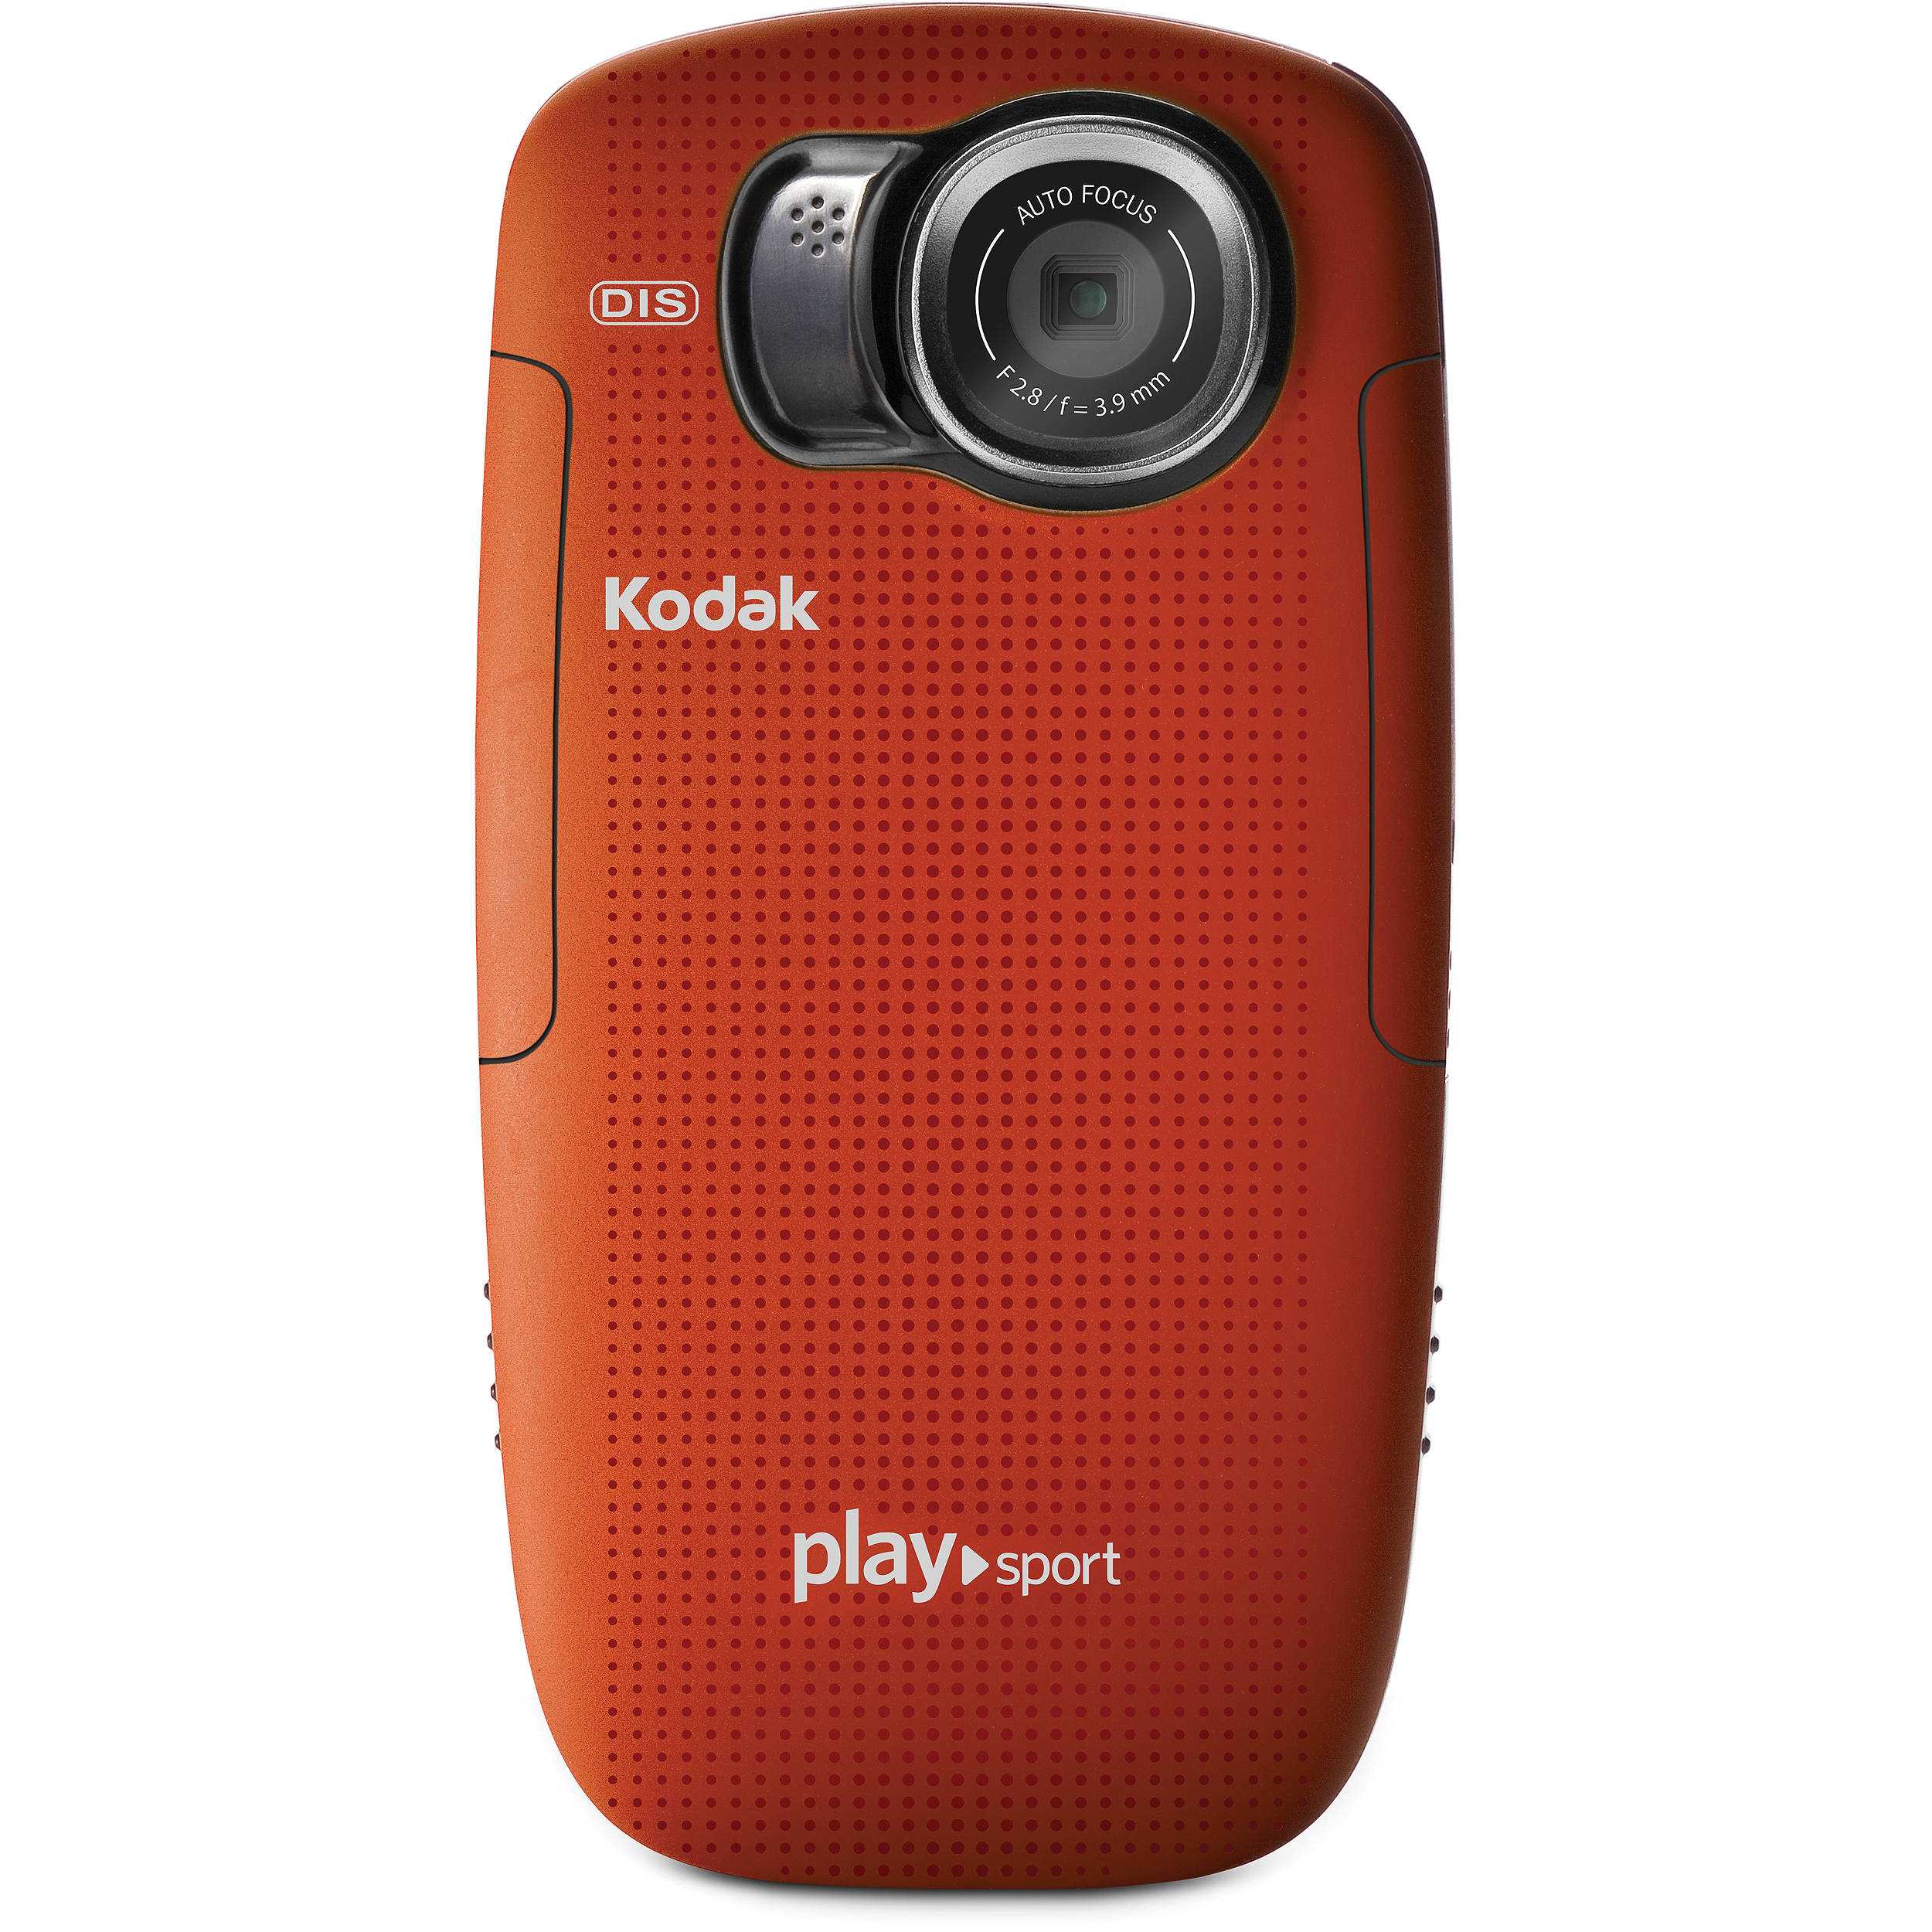 Kodak playsport zx5 - купить , скидки, цена, отзывы, обзор, характеристики - видеокамеры